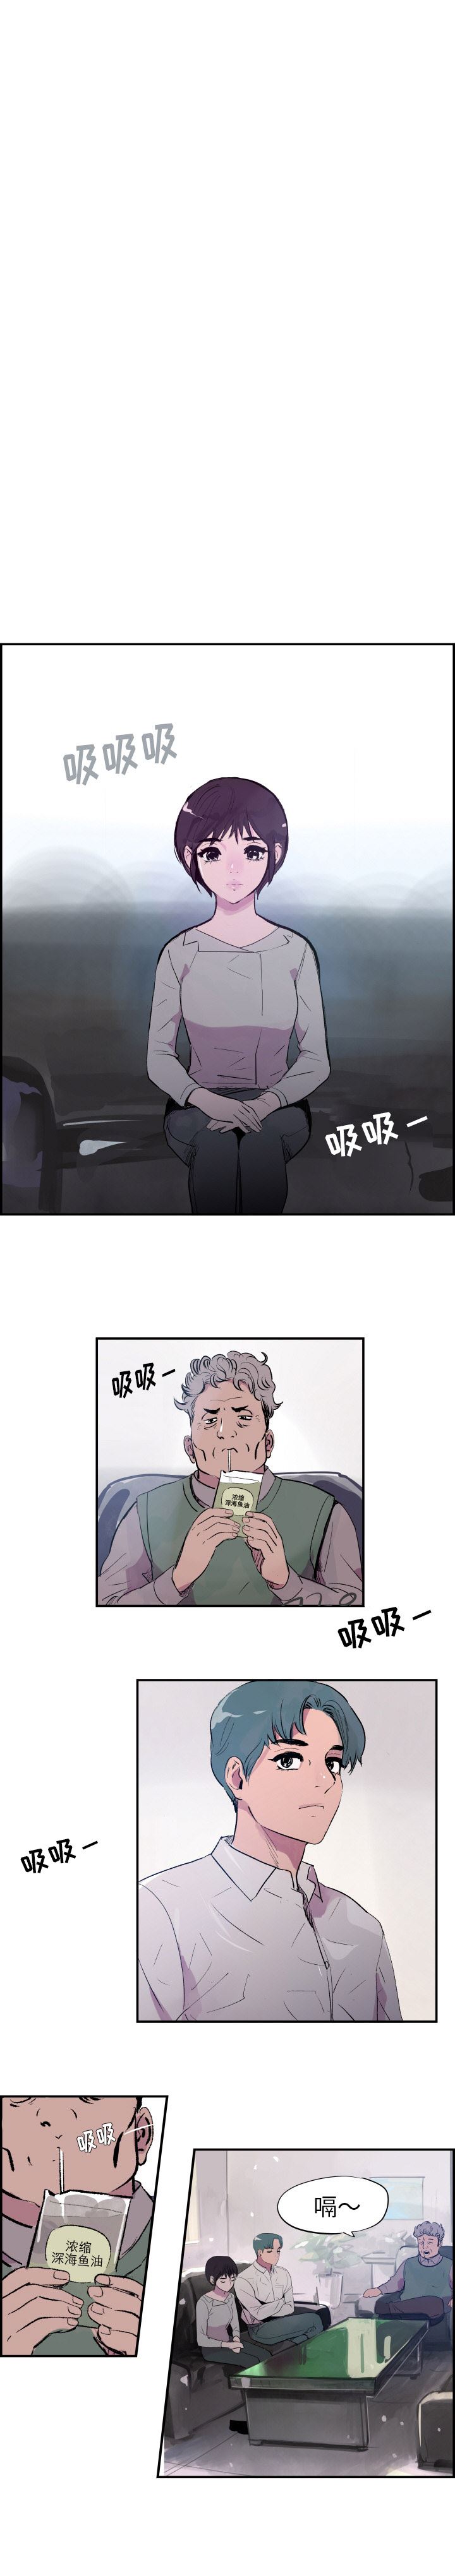 韩国污漫画 任何小姐 28 5